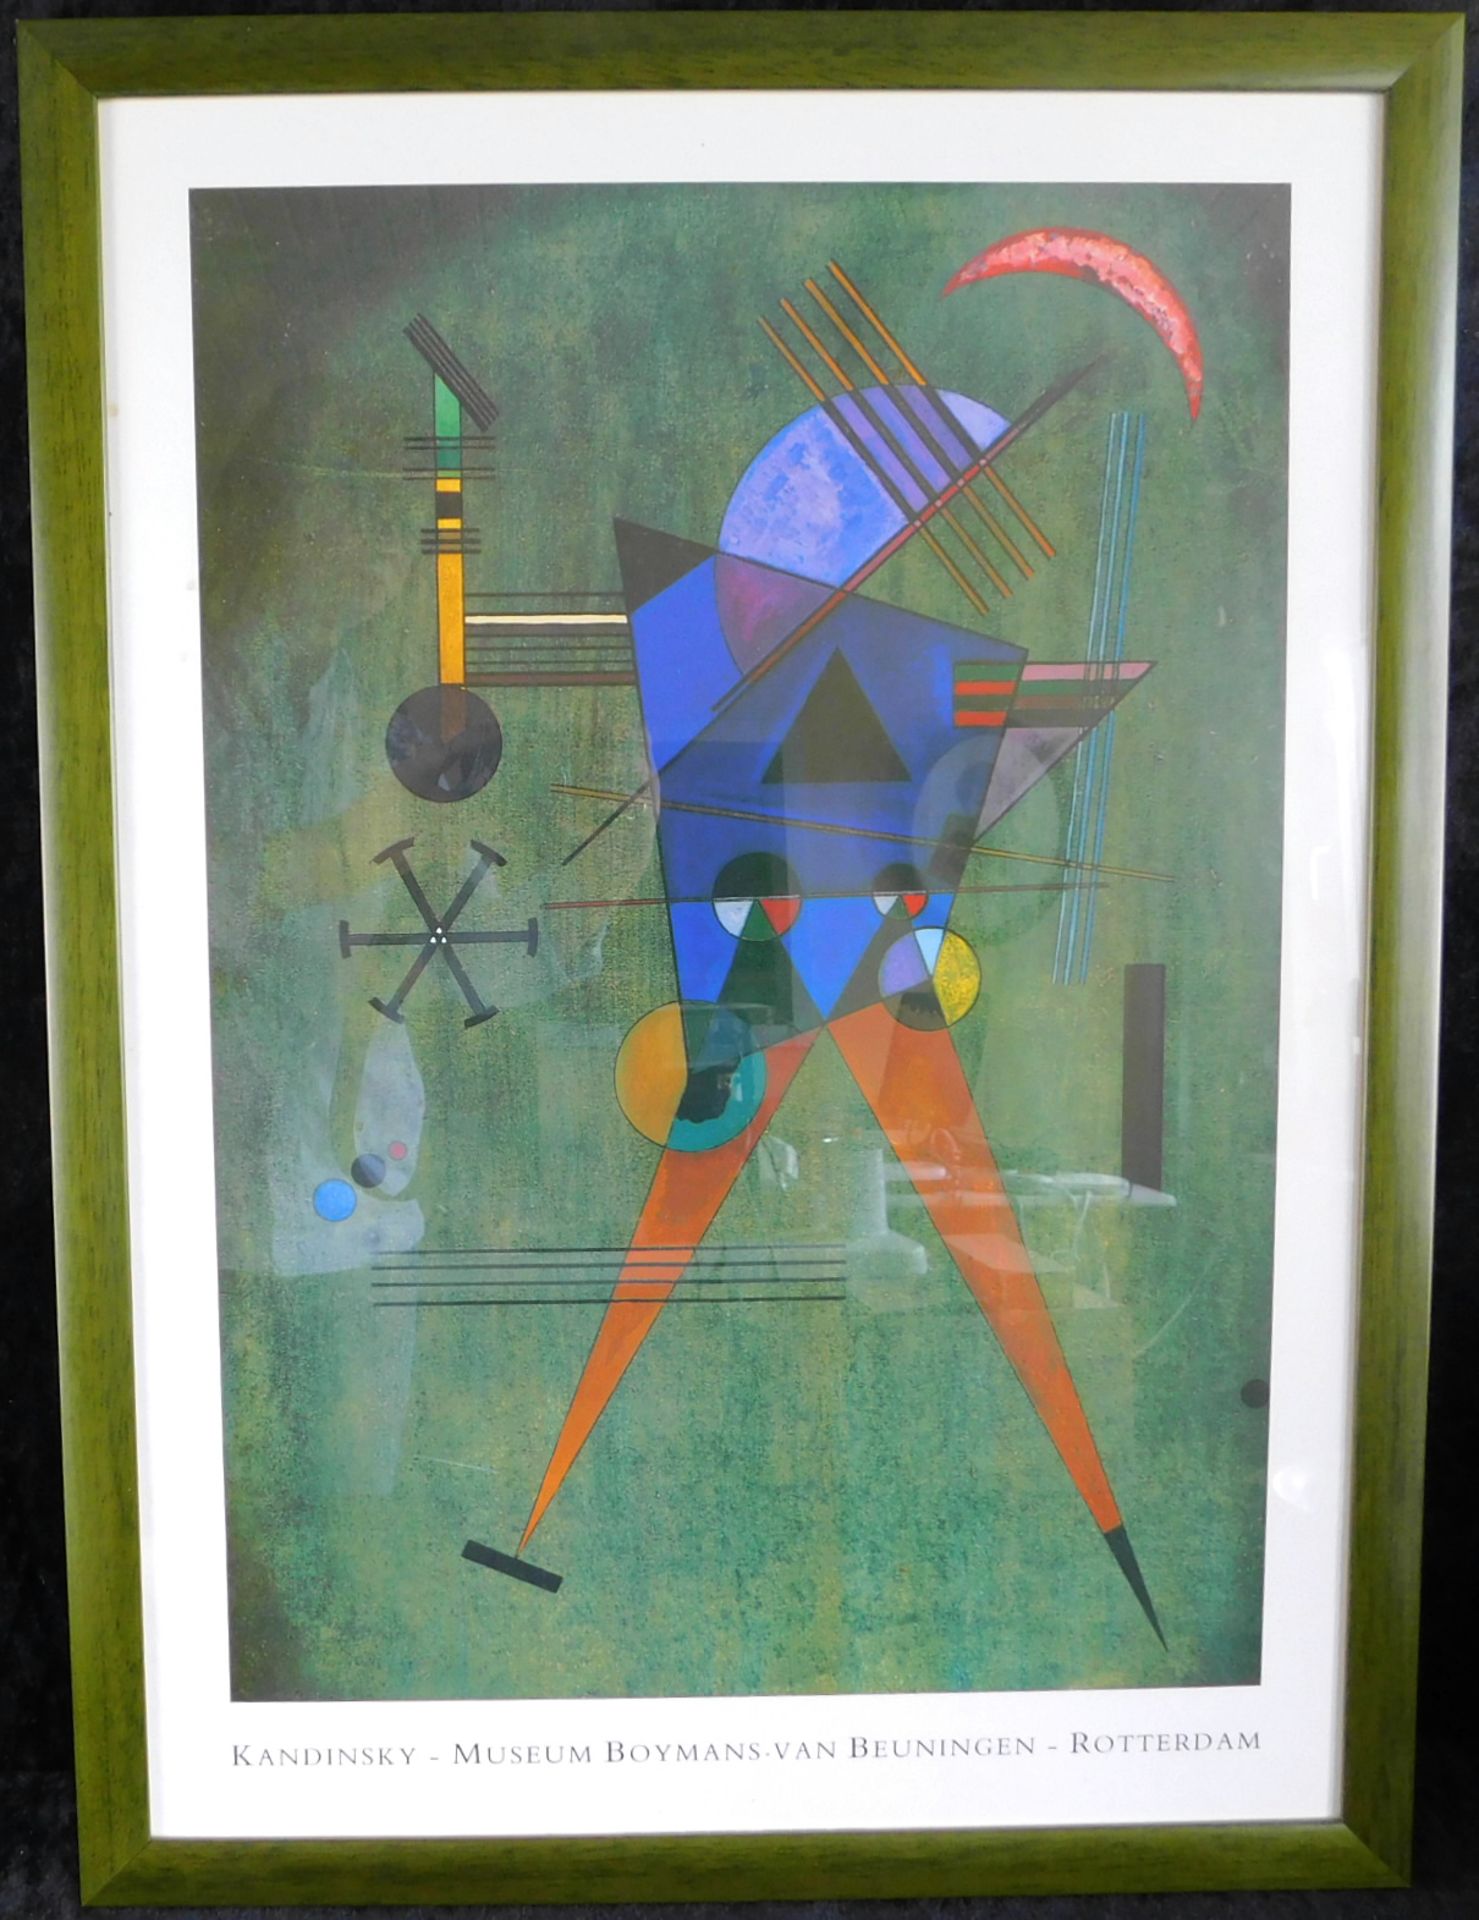 Wassily Kandinsky, "Schwarzes Dreieck", Farbplakat, Ausstellung Museum Boymans van Beuningen- Rotter